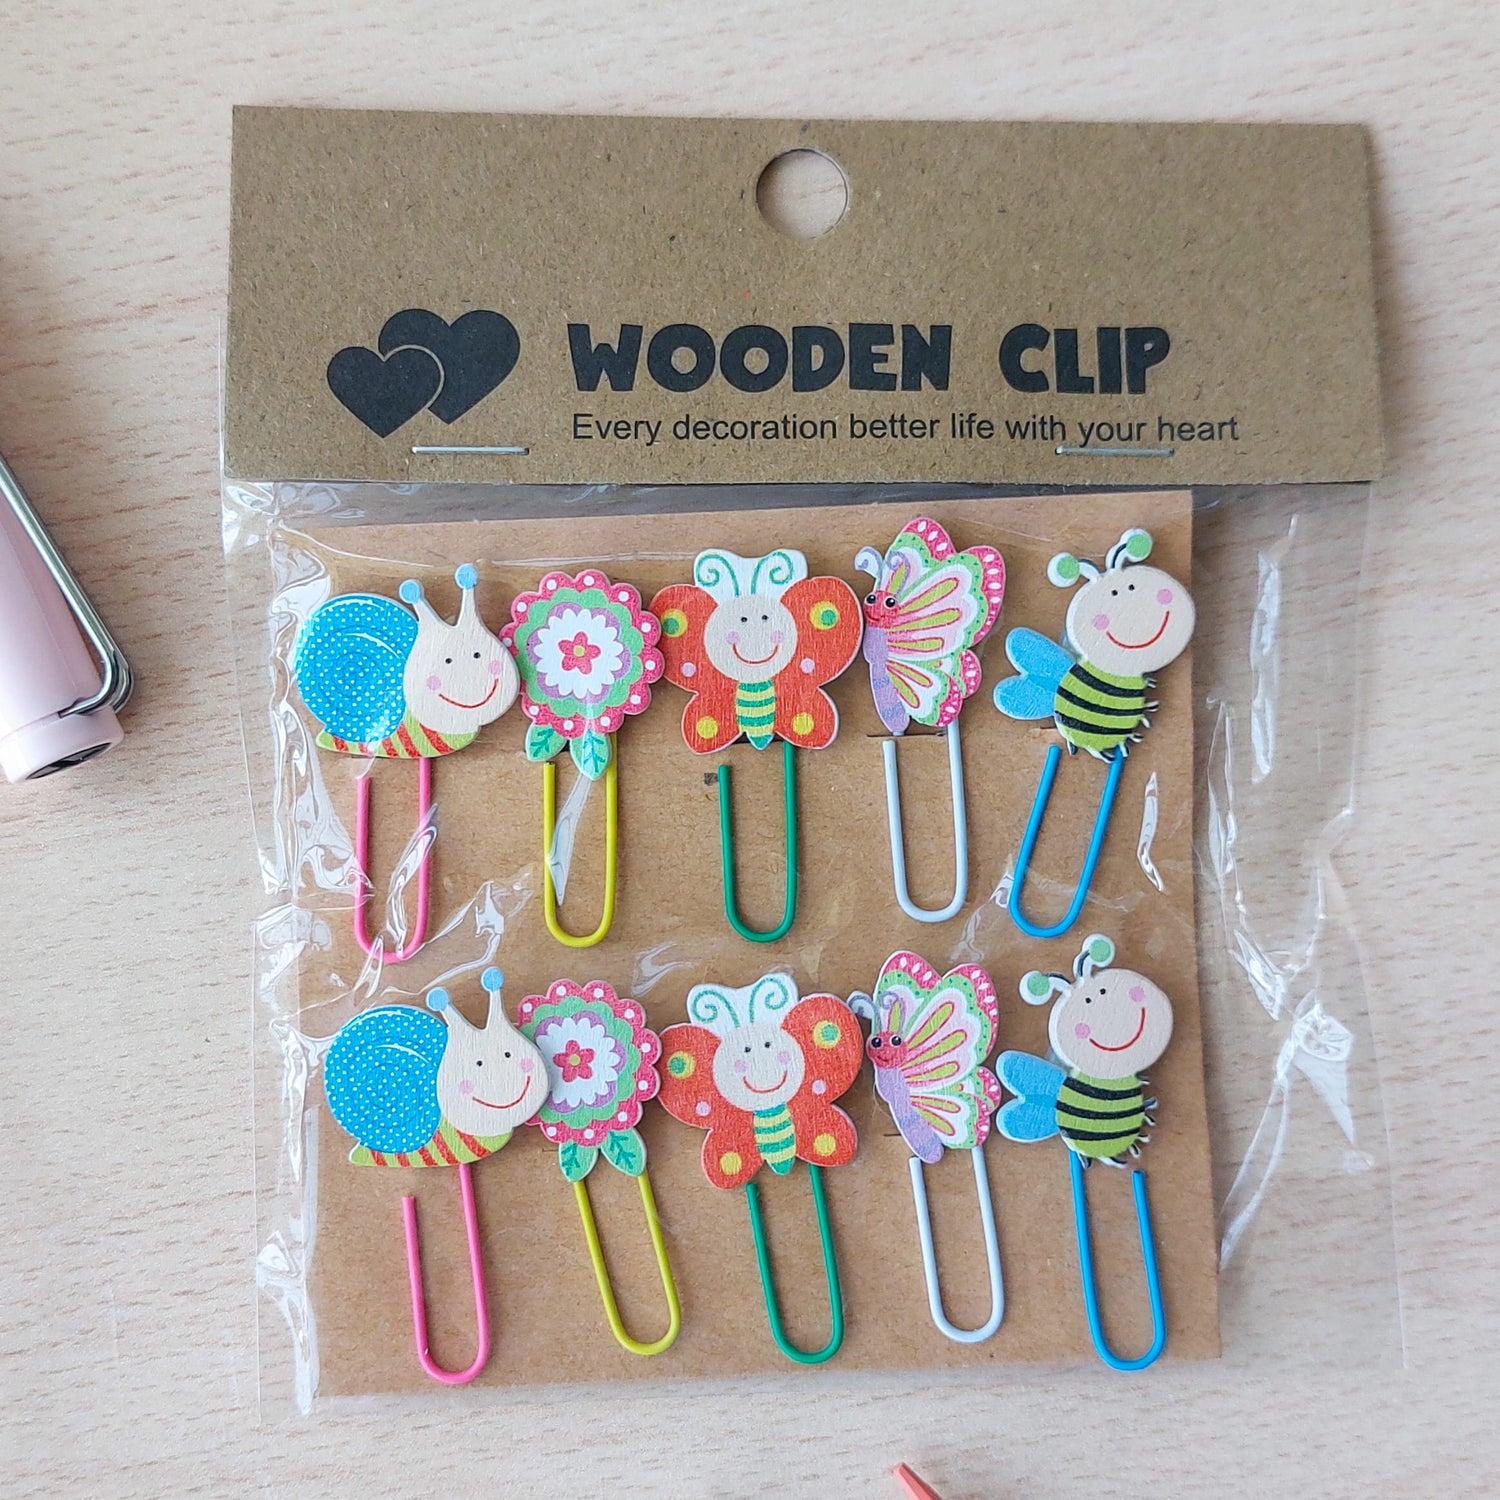 Paper Clips Wooden Clip Brand (10 pcs set)